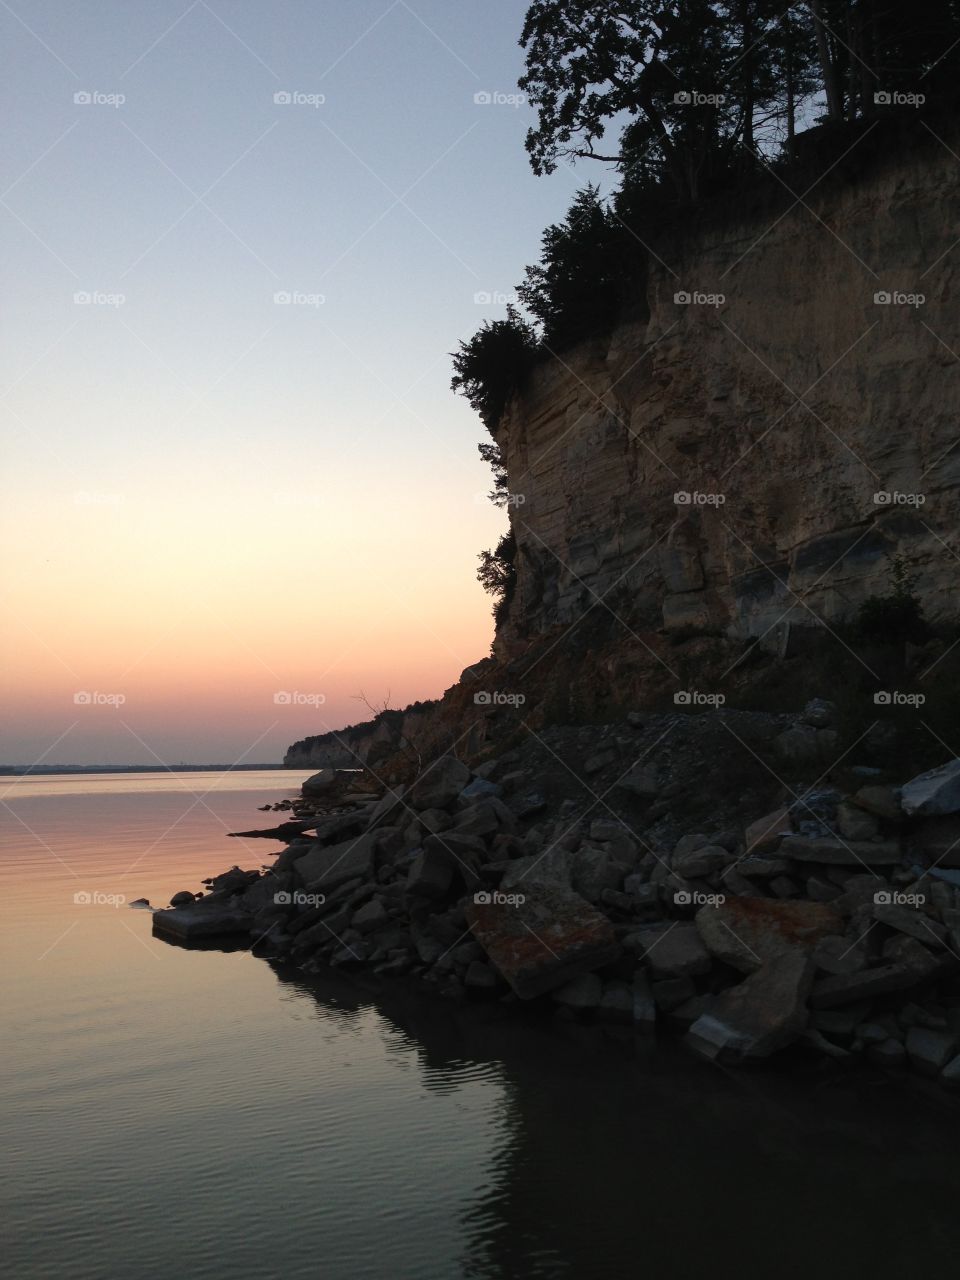 Sunrise on the lake
